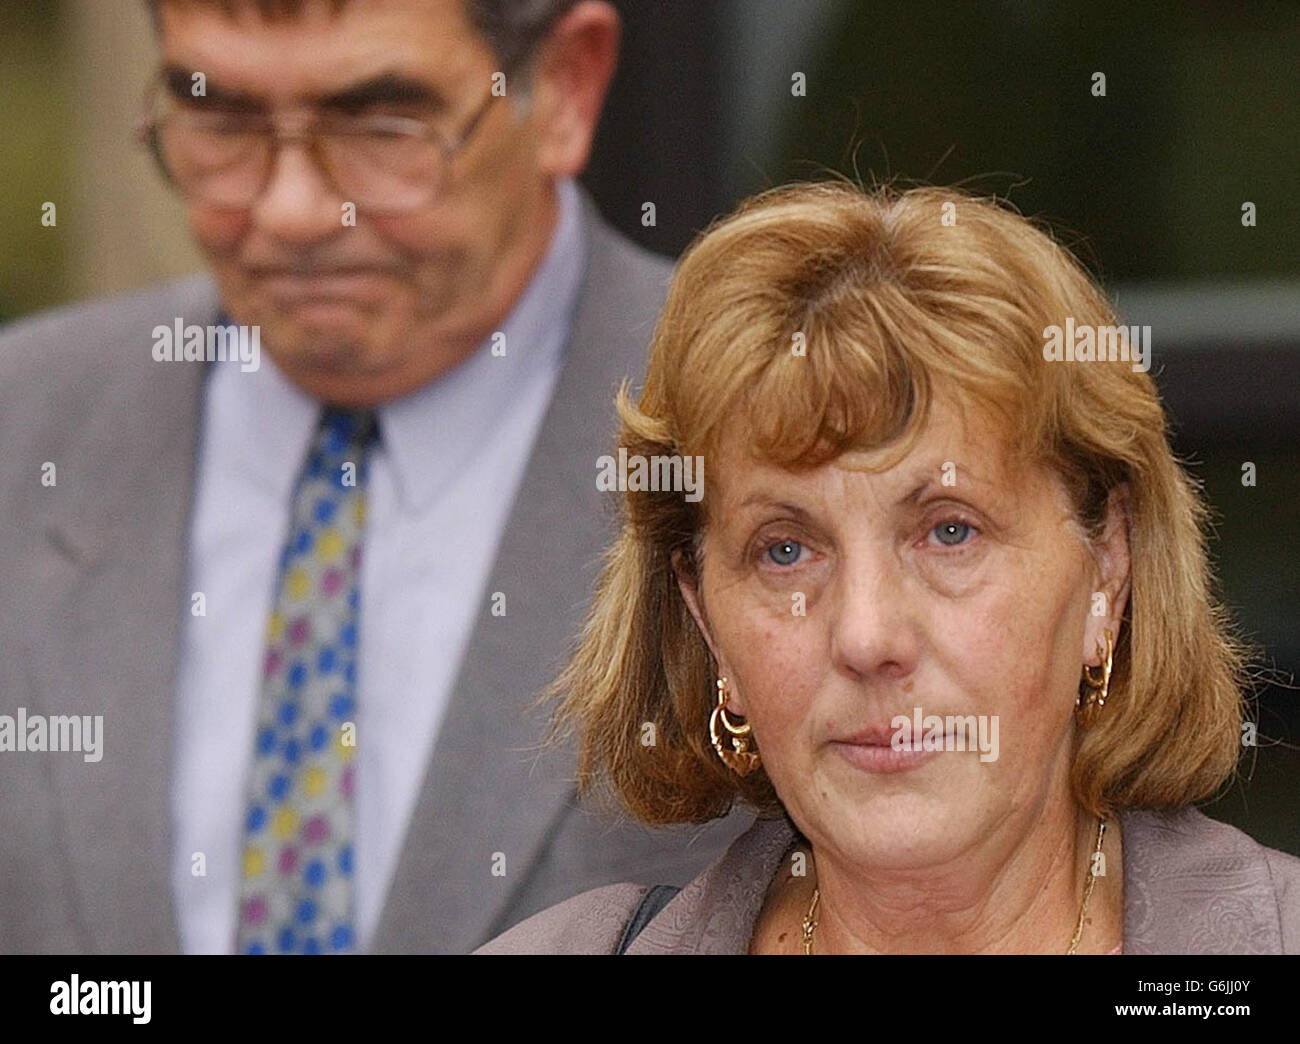 Wanda et Ray Moran, les parents de Rachel Moran assassinée, quittent la Cour de justice de Hull, après que Michael Little ait été reconnu coupable du meurtre de leur fille de 21 ans. Banque D'Images